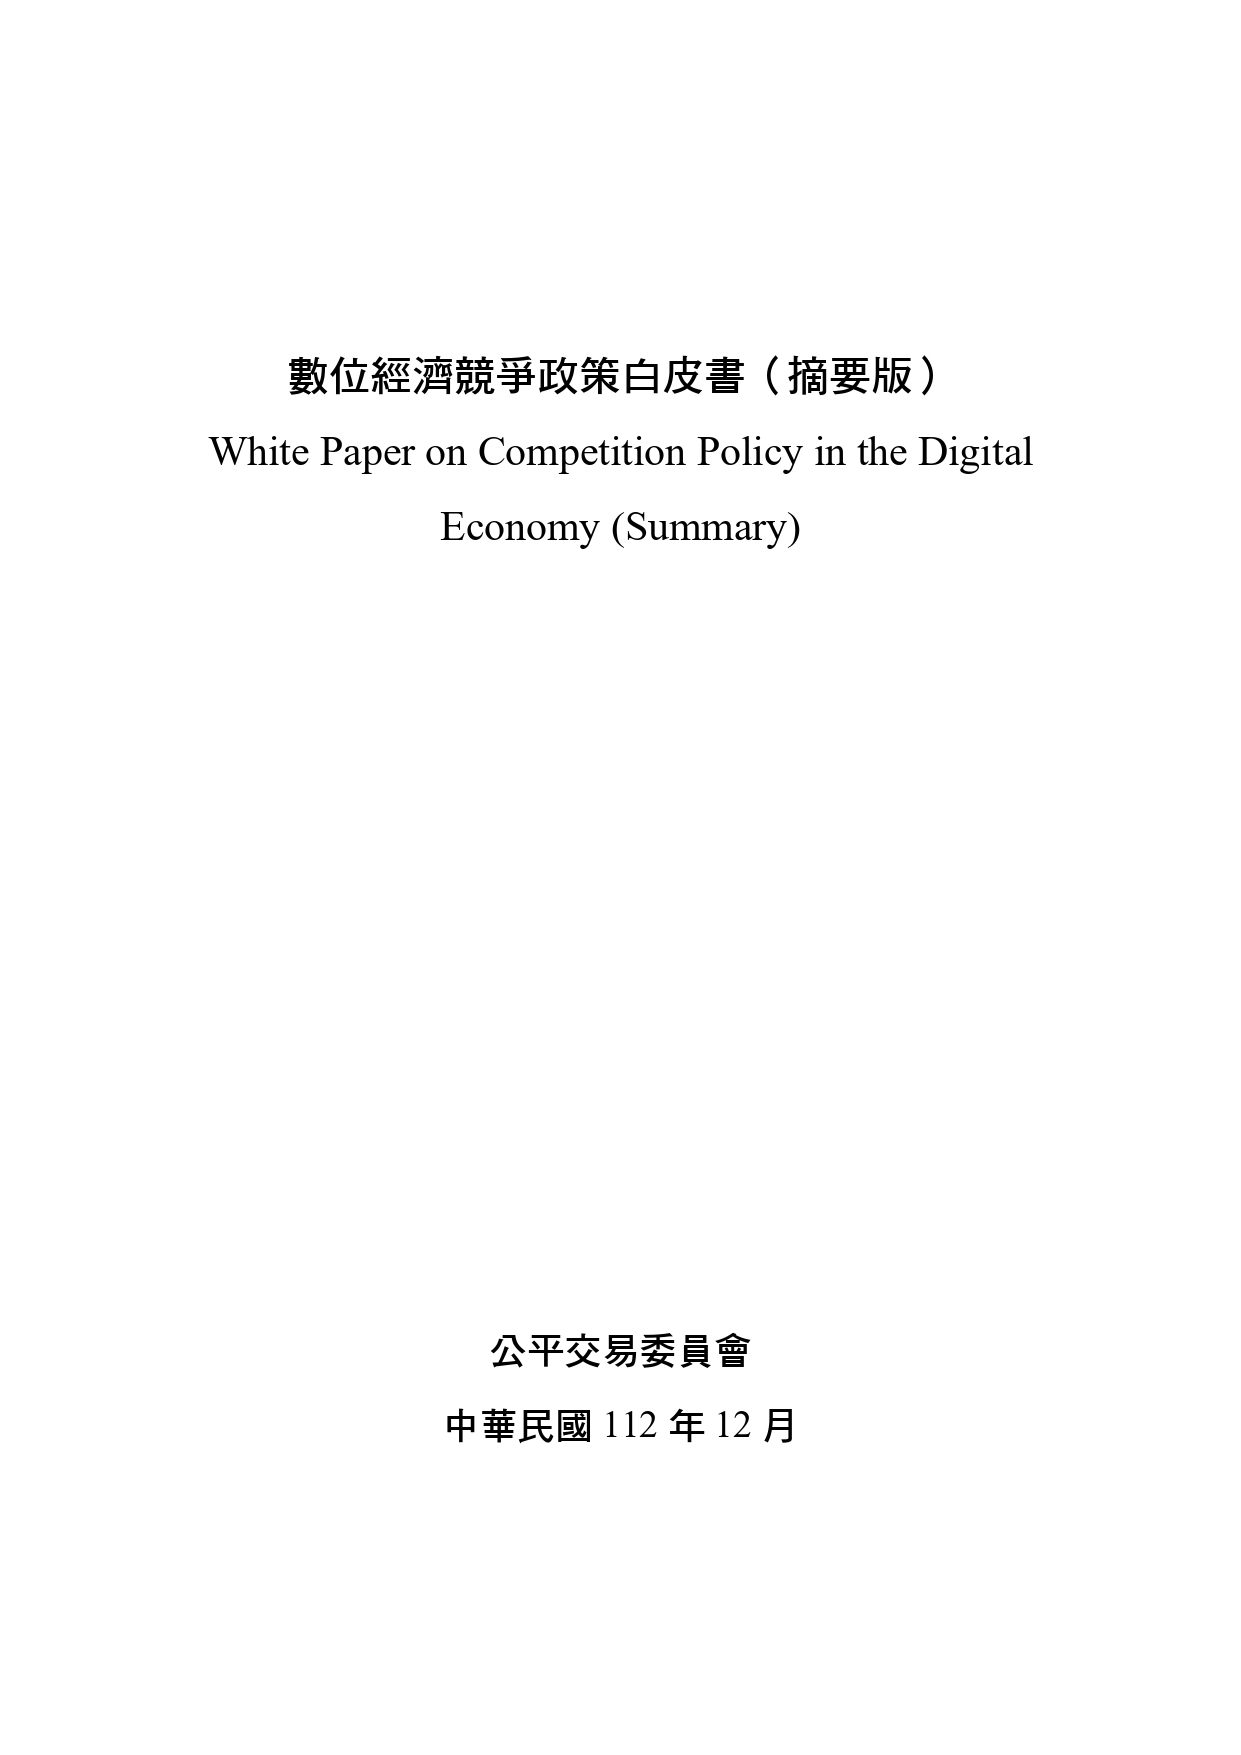 數位經濟競爭政策白皮書（摘要版）